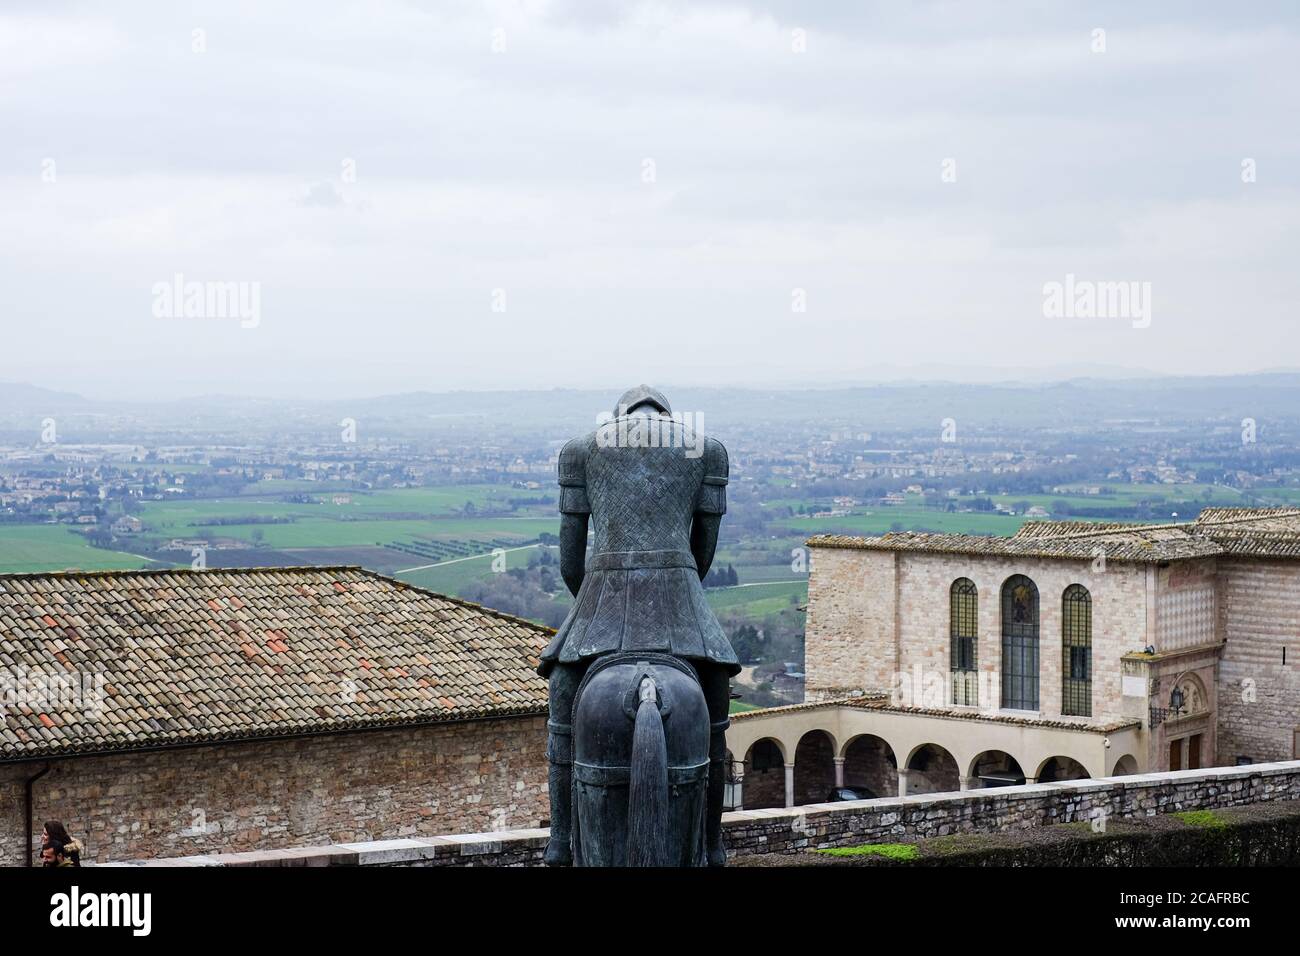 Assisi, italia - giugno 30 2020: Famosa scultura in bronzo di fronte alla chiesa di san francesco d'Assisi sul paesaggio della città vecchia, italia Foto Stock